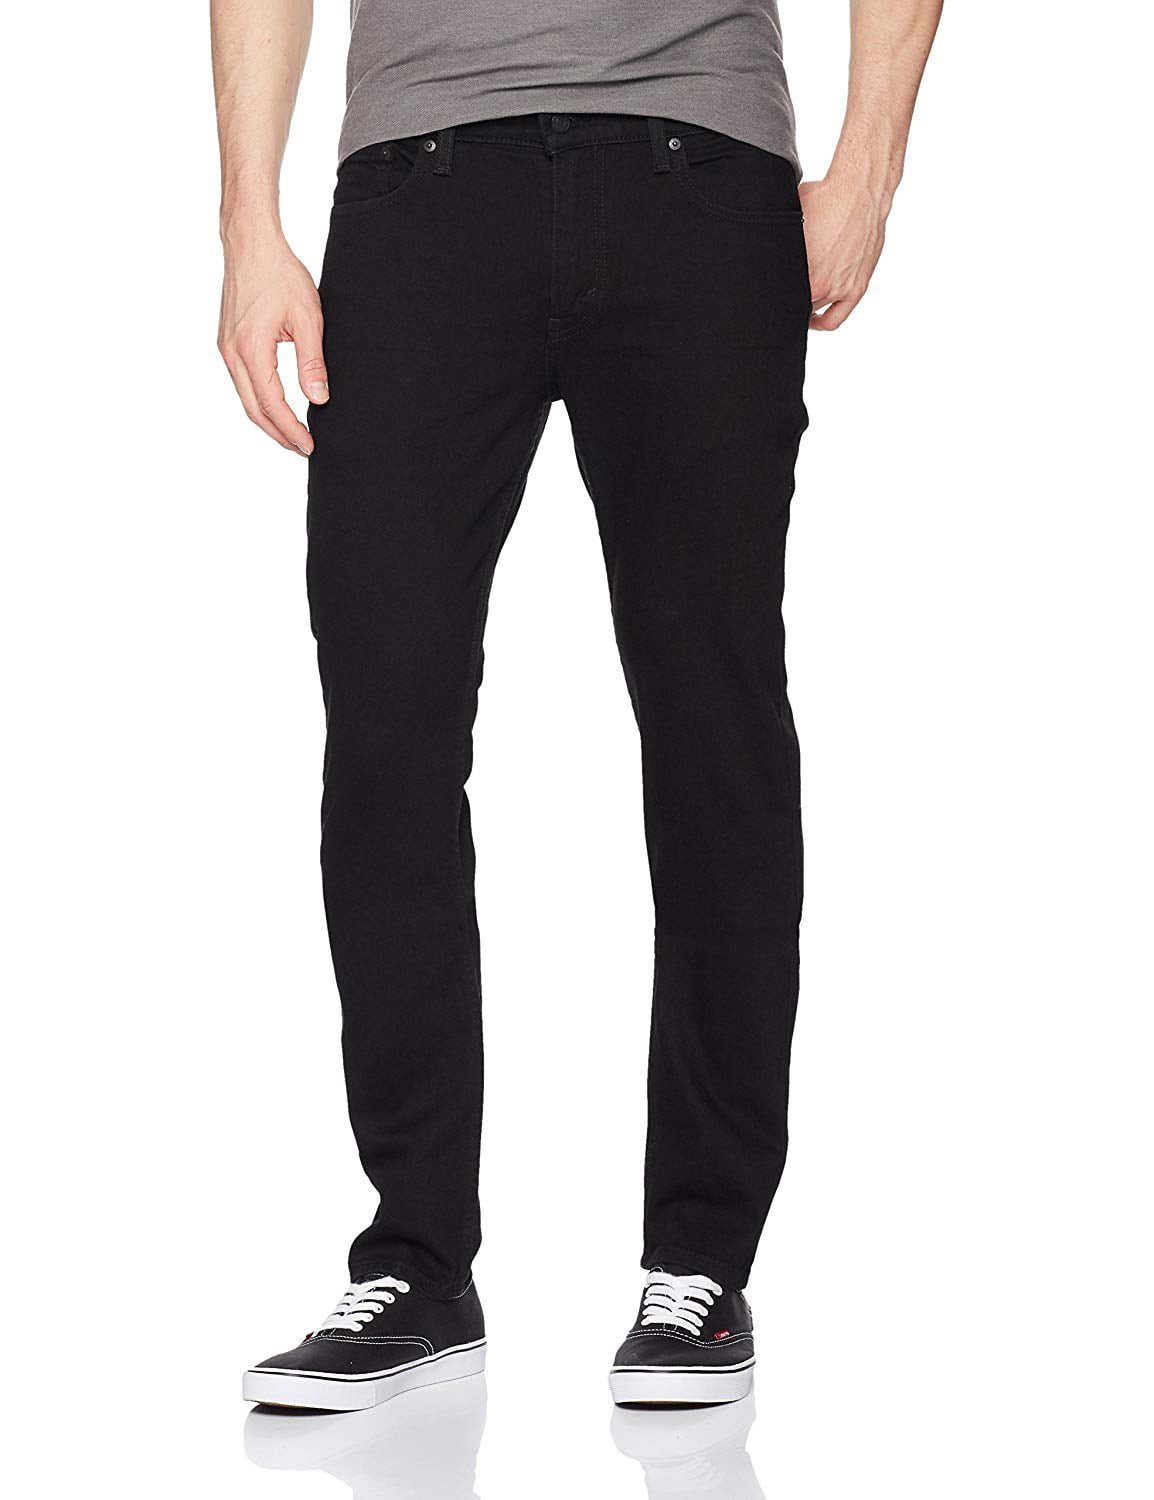 Levi's Men's 511 Slim Fit Jeans Stretch, Black 3D, 34W x 29L | Walmart ...